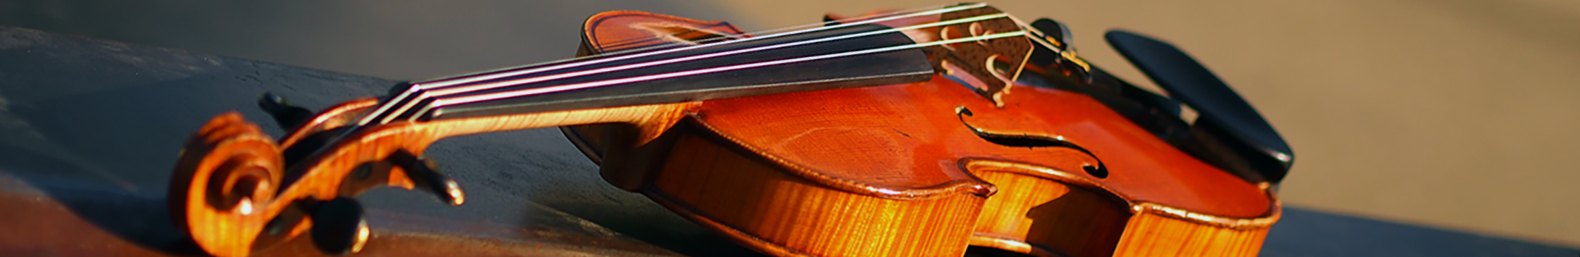 Violin lessons - Musikunterricht Basel